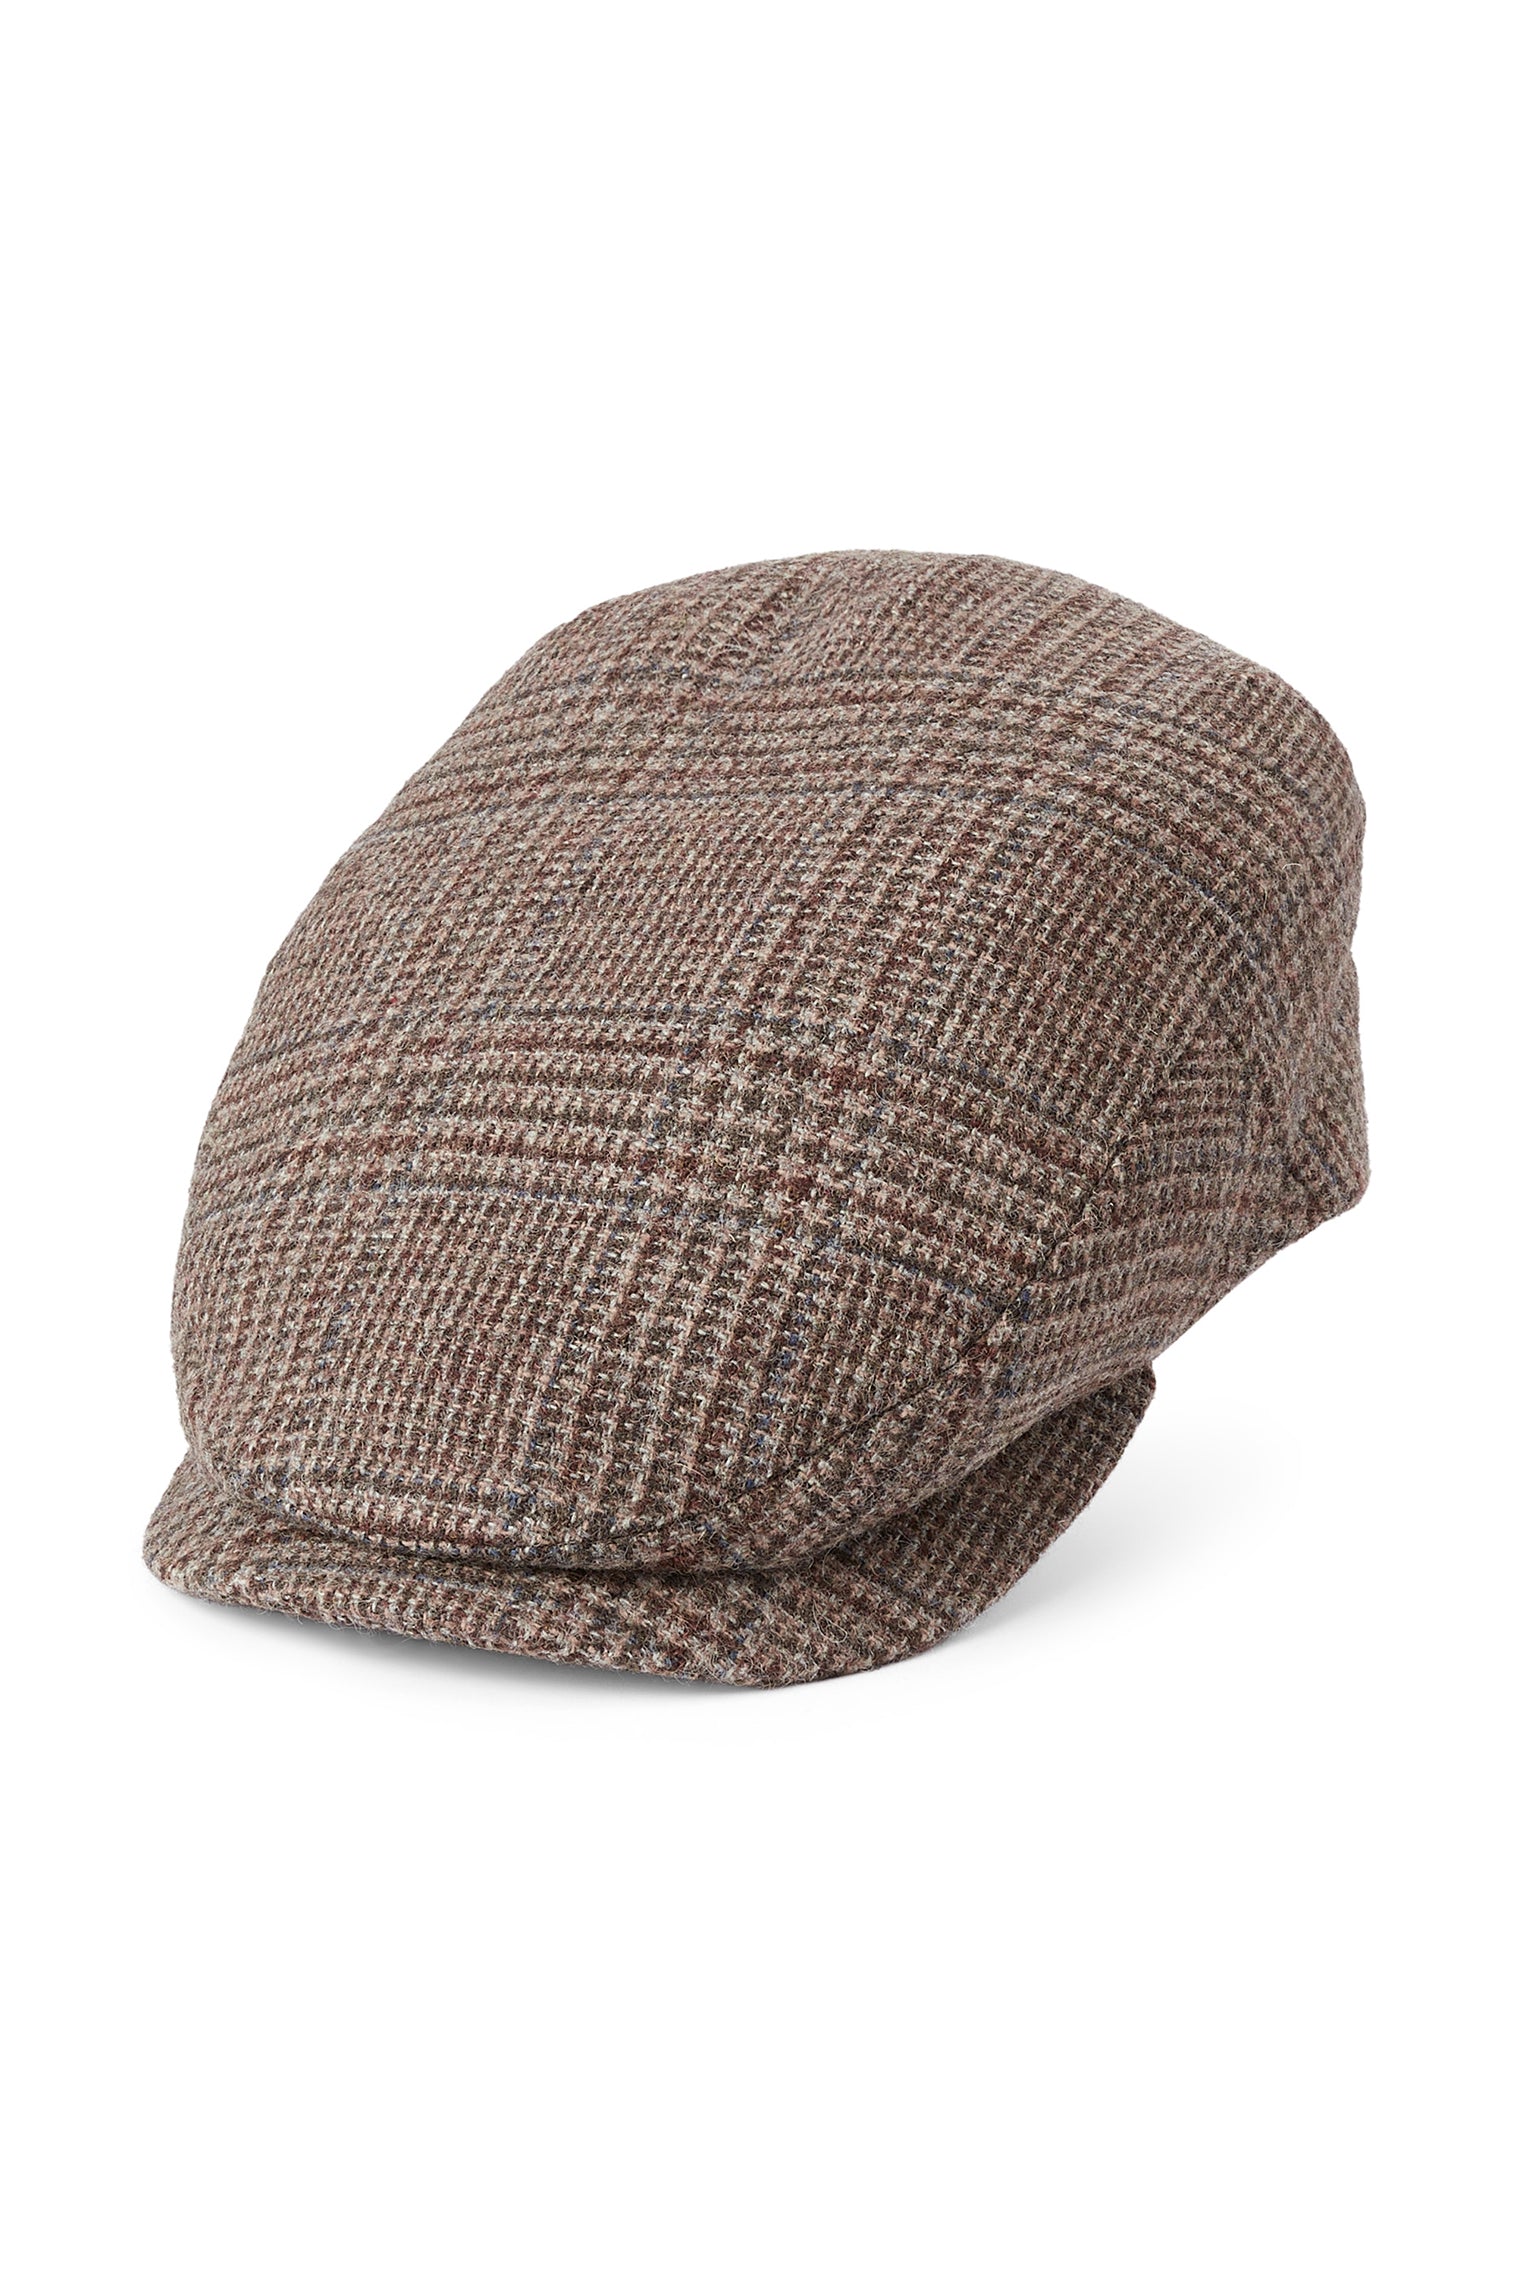 Drifter Glen Check Flat Cap - Men's Hats - Lock & Co. Hatters London UK